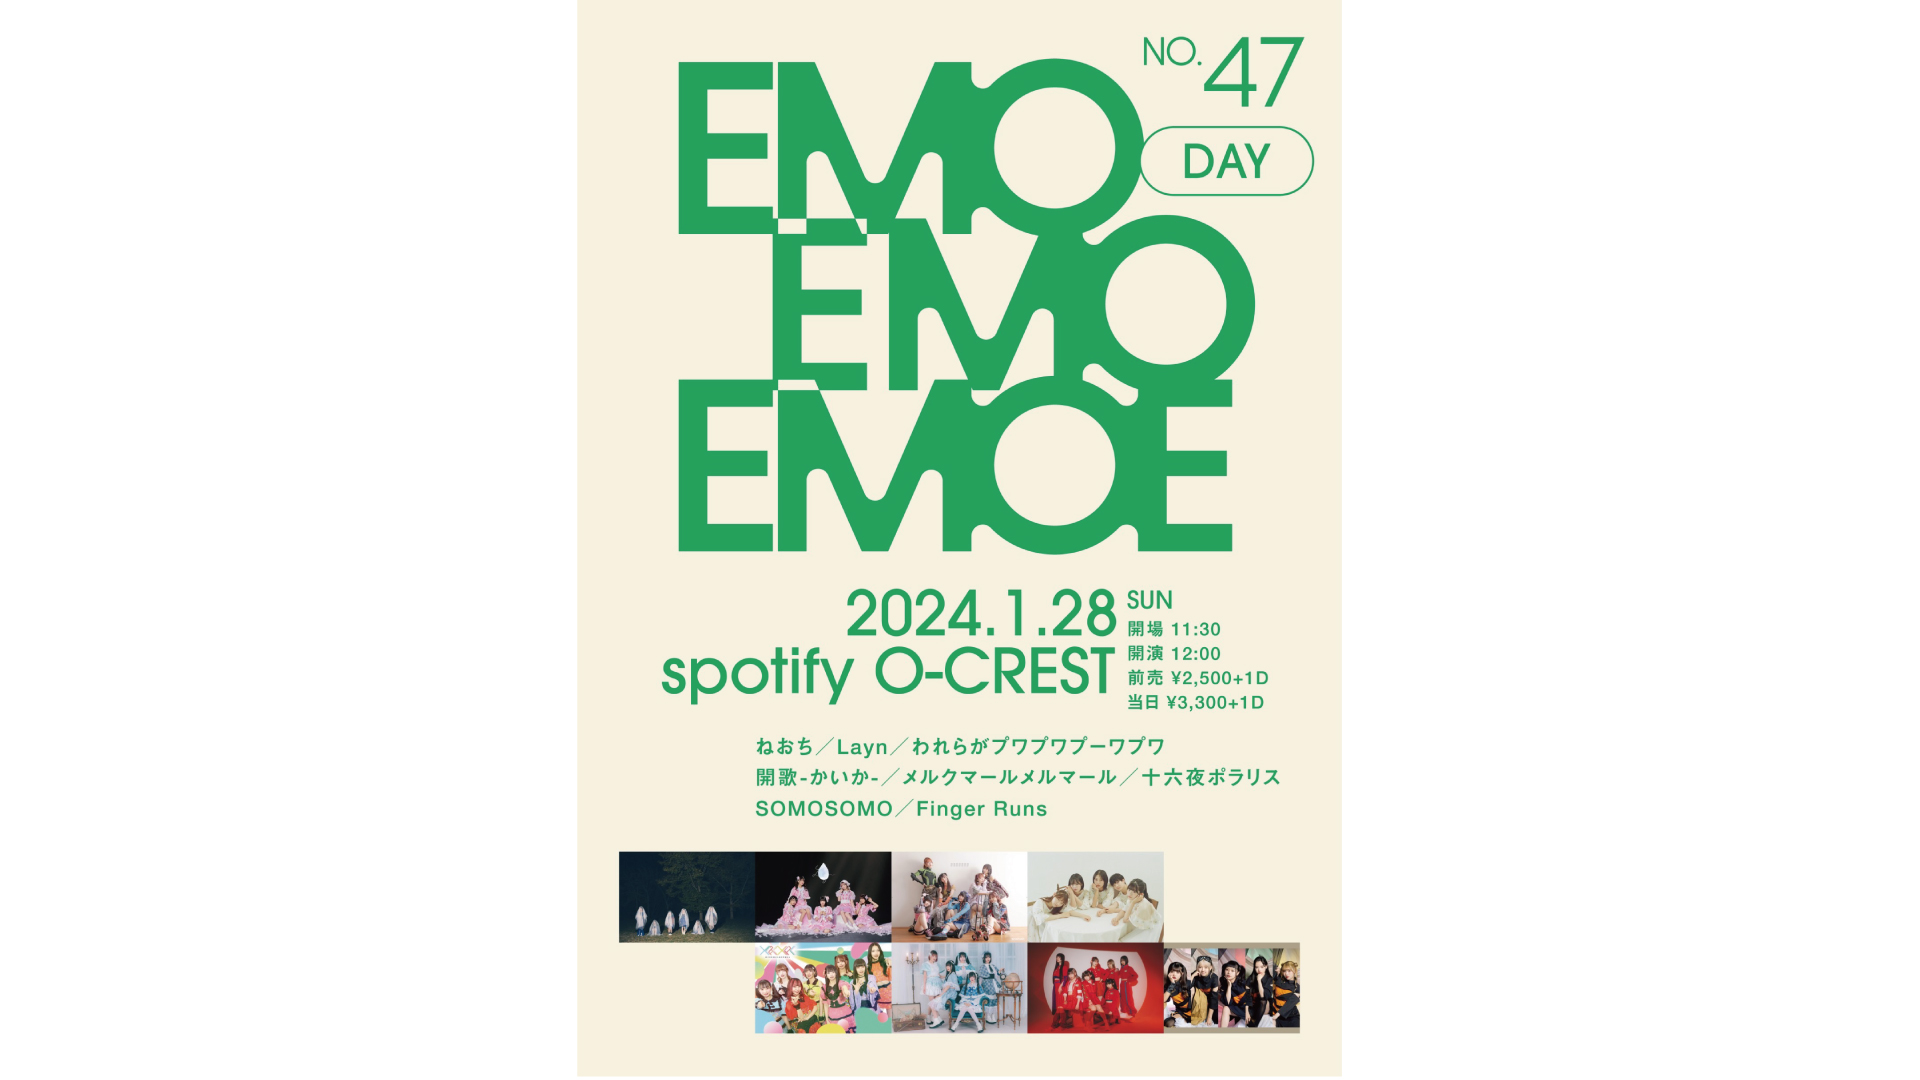 2024/1/28① 『emoemoemoe』 No.47 | Spotify O-EAST・O-WEST・O-Crest 